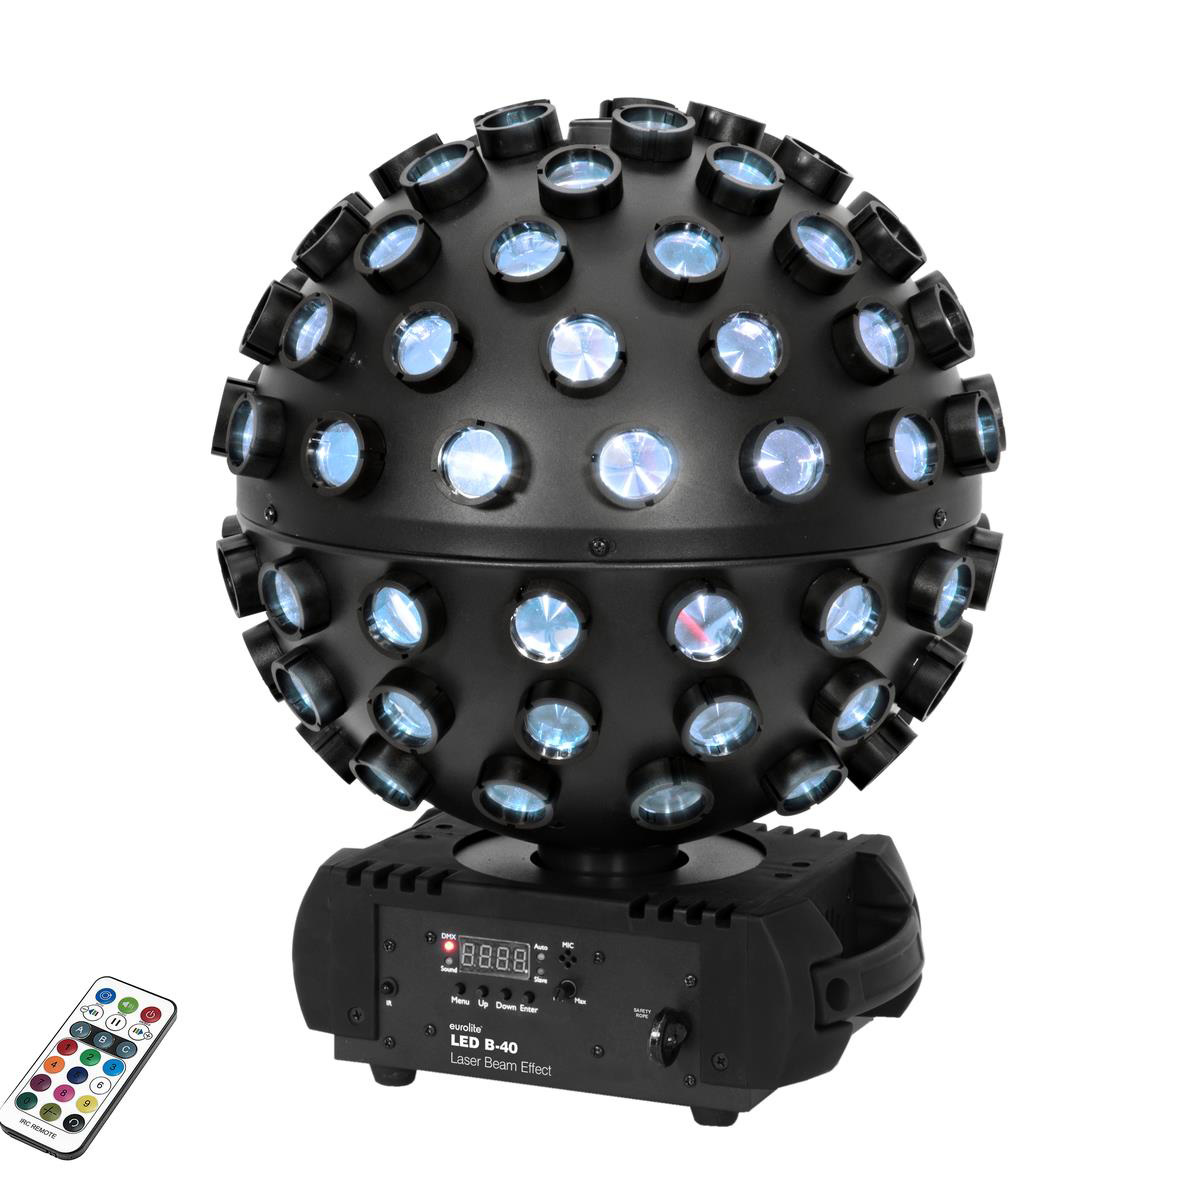 MULTI BALL Lichteffekt - LED + Lasereffet in einem - extrem raumfüllend